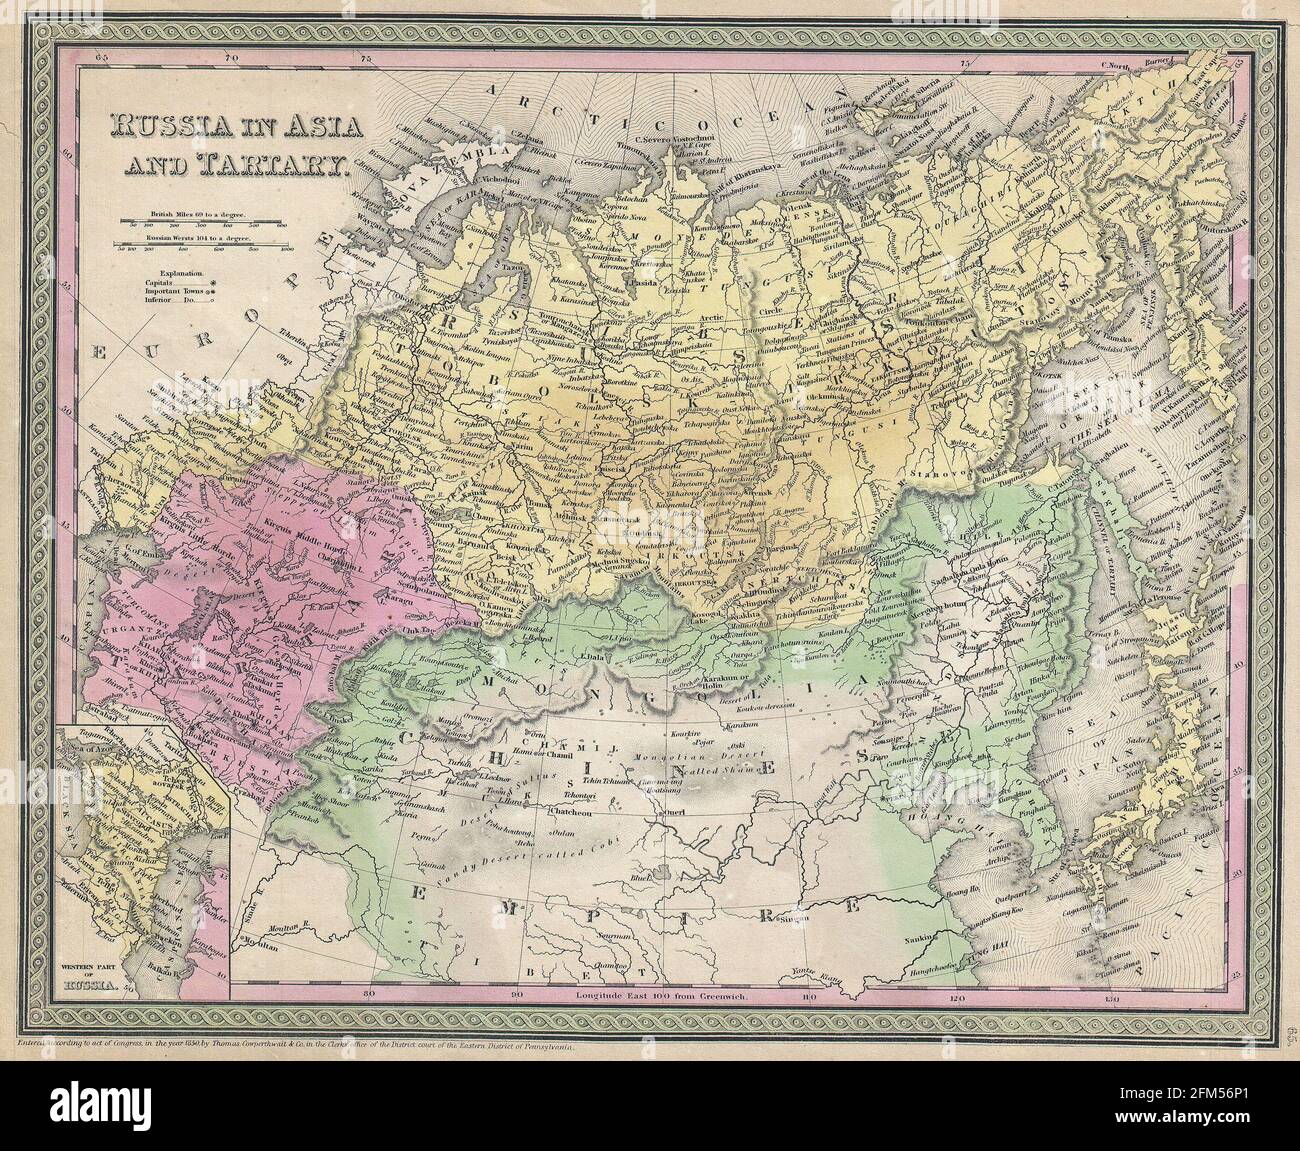 Carte ancienne de Russie gravée en cuivre du XIXe siècle. Toutes les cartes sont magnifiquement colorées et illustrées montrant le monde à l'époque. Banque D'Images